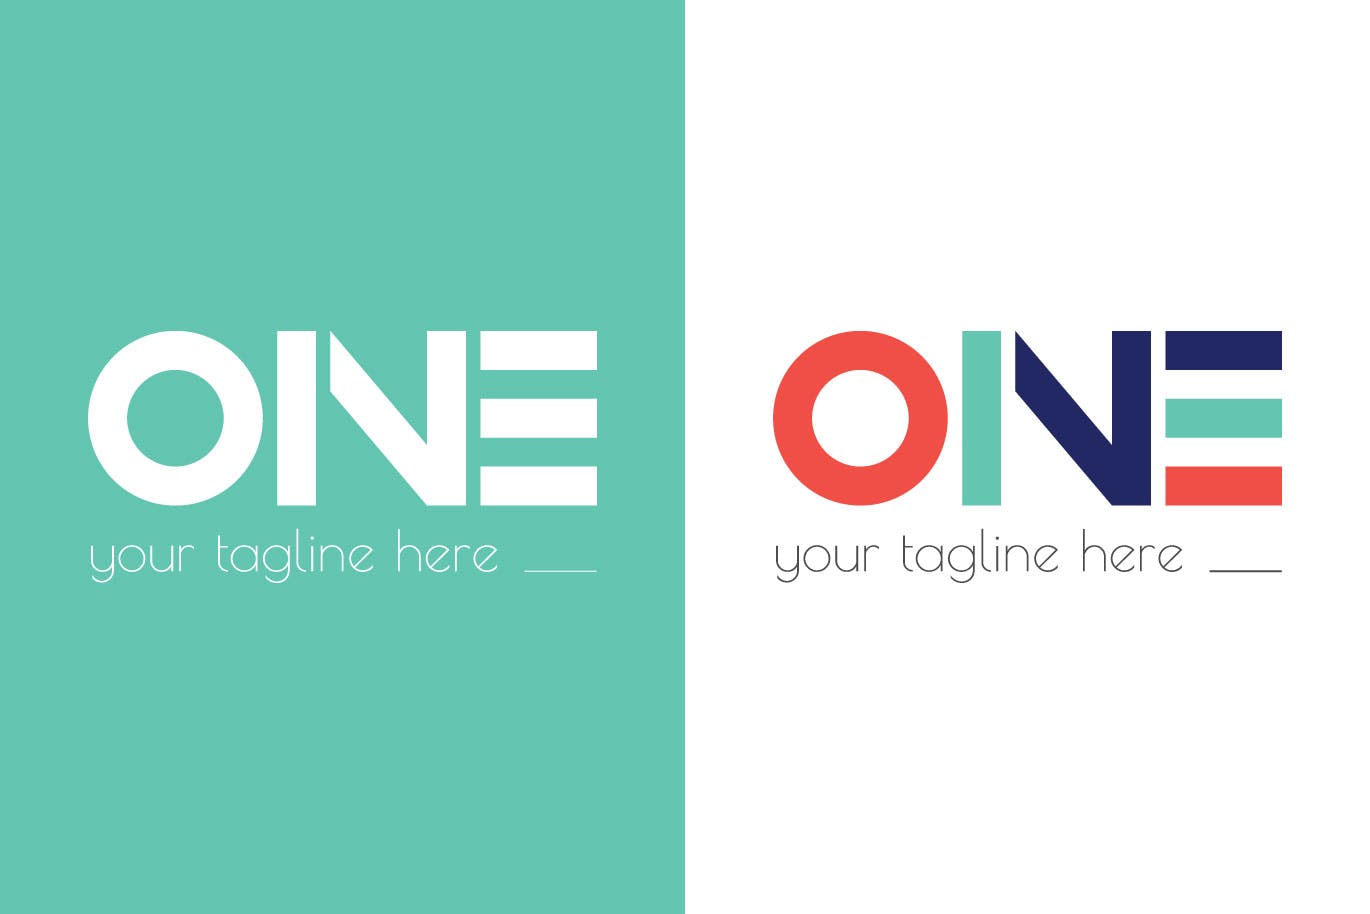 创意ONE文字Logo设计第一素材精选模板 One Modern Logo Template插图(1)